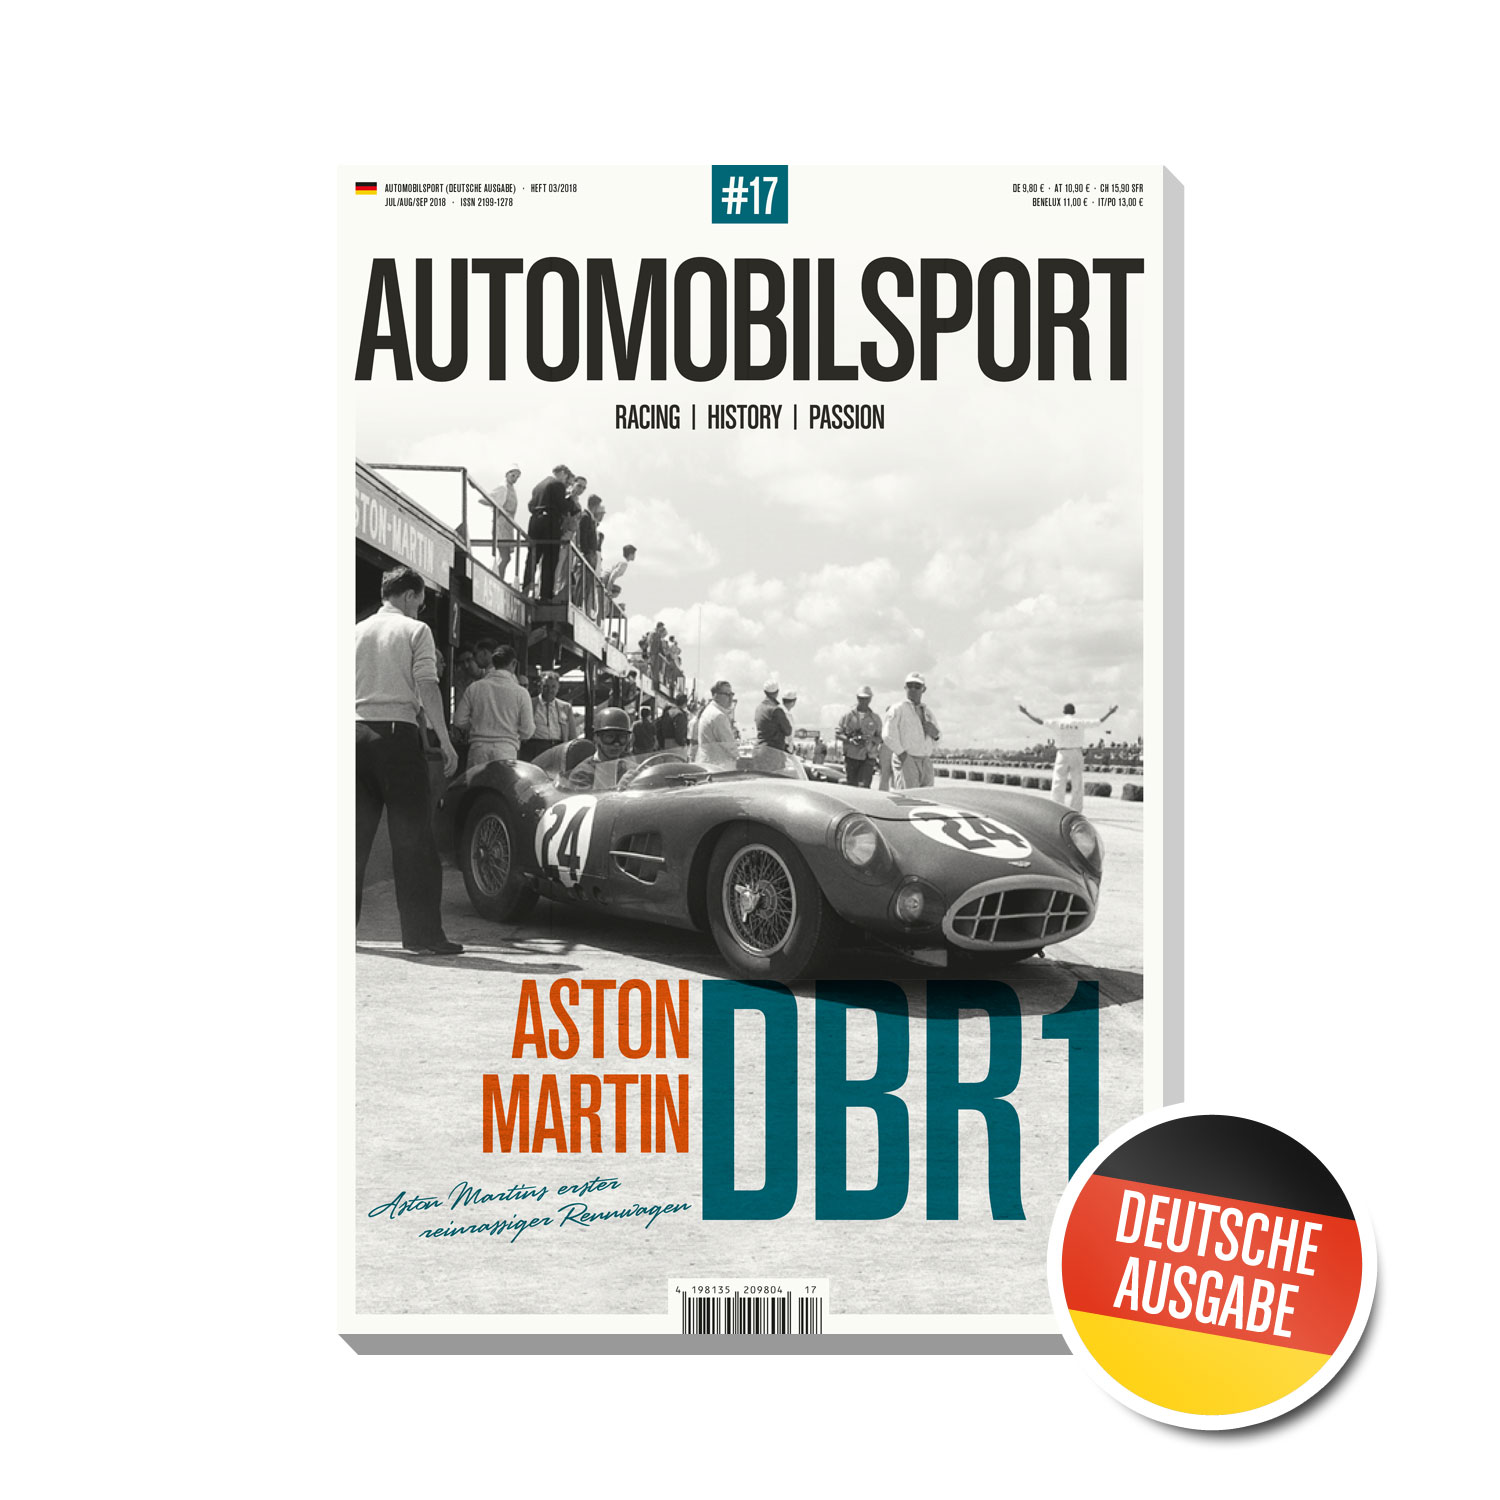 03/2016 AUTOMOBILSPORT #09 – Deutsche Ausgabe